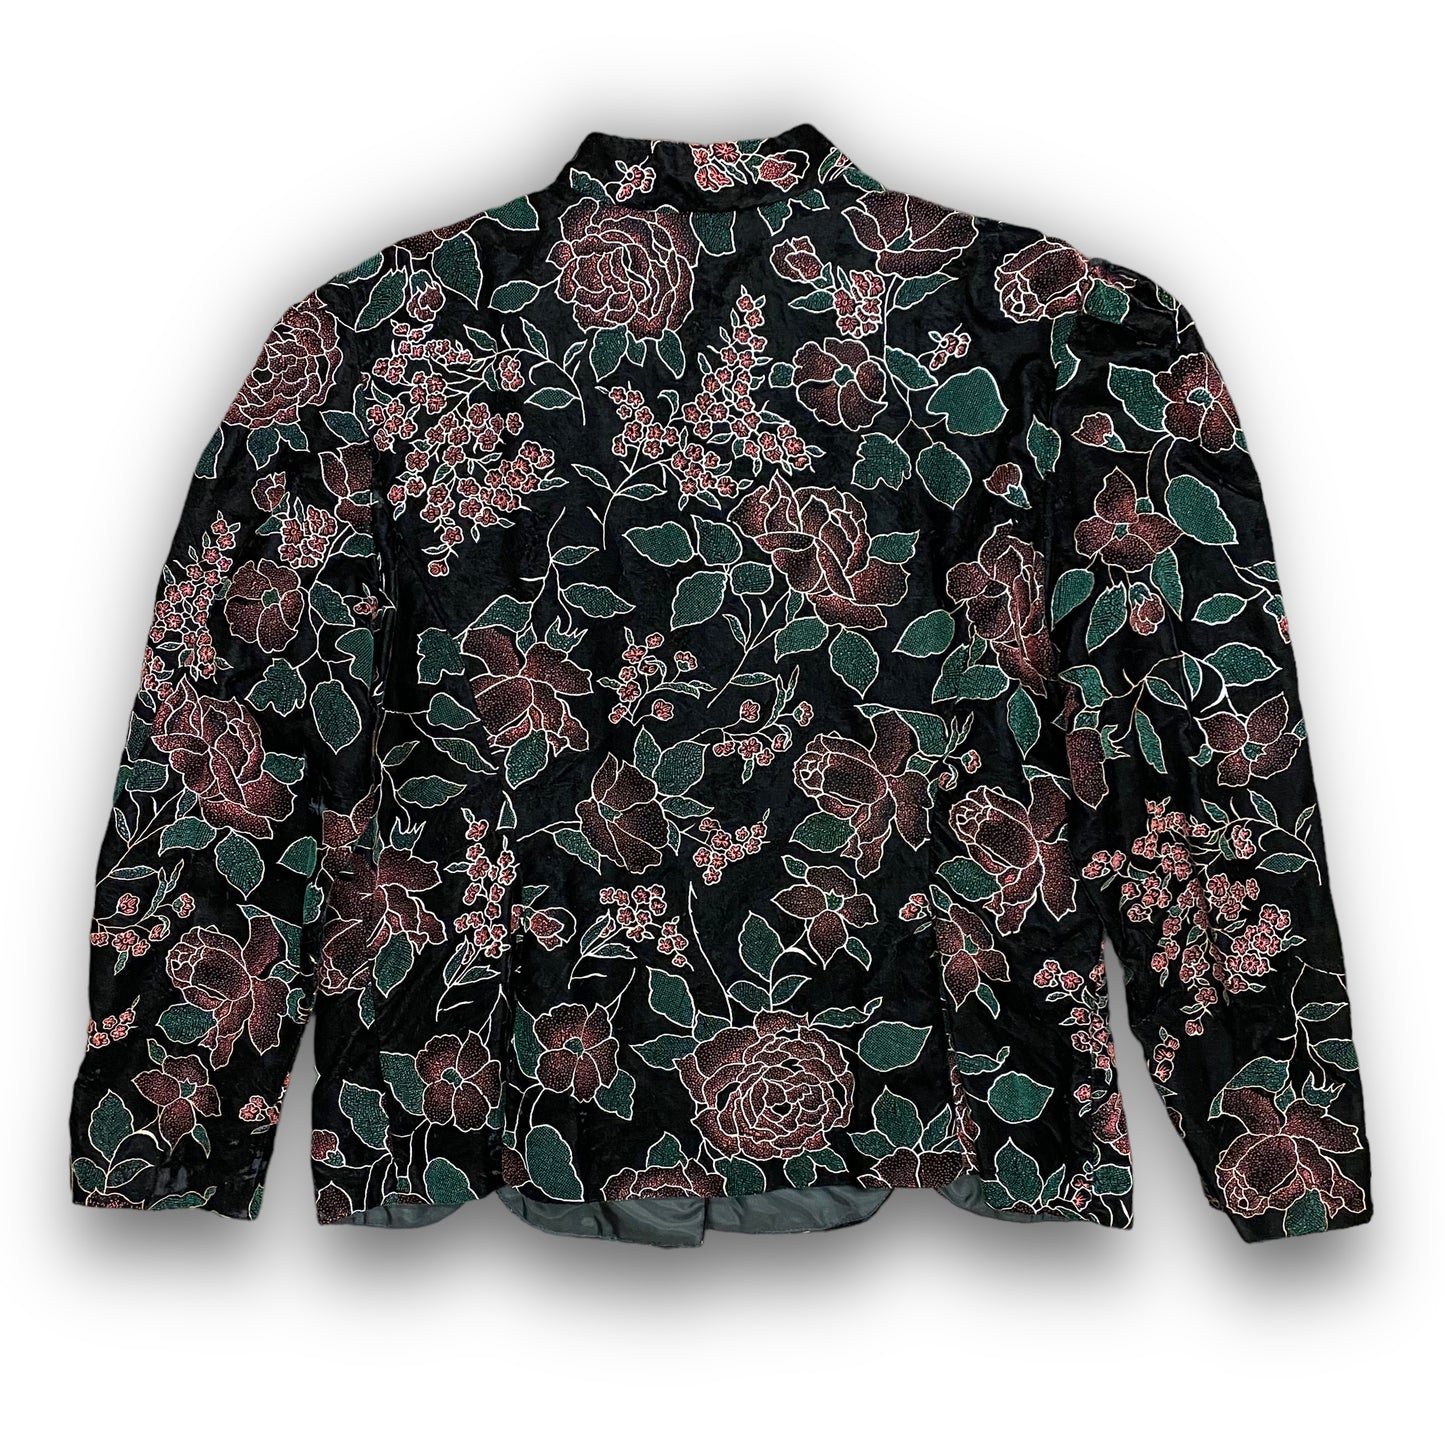 Vintage 1990s Floral Velour Button Up Jacket - Size Medium